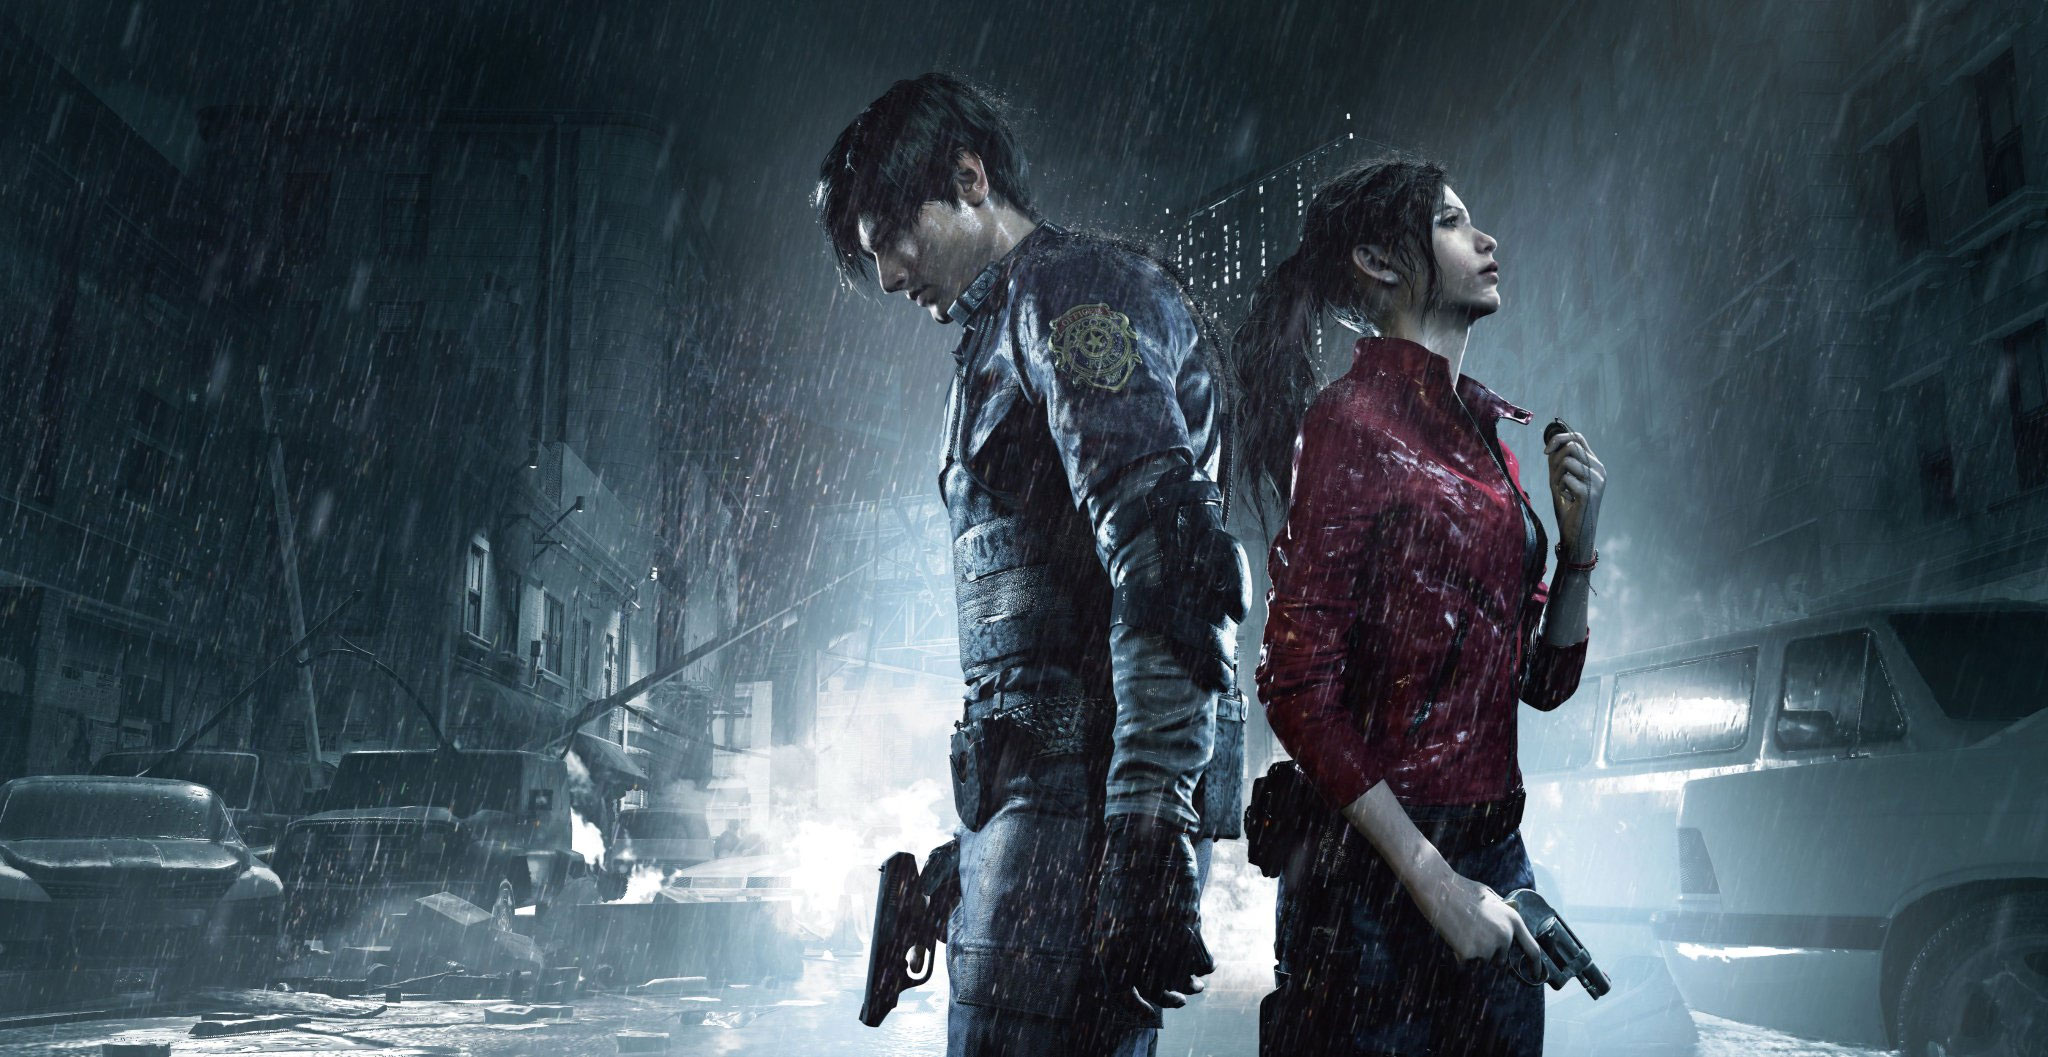 Szykujmy się na Resident Evil 3 Remake. Sprzedaż dwójki bardzo wysoka